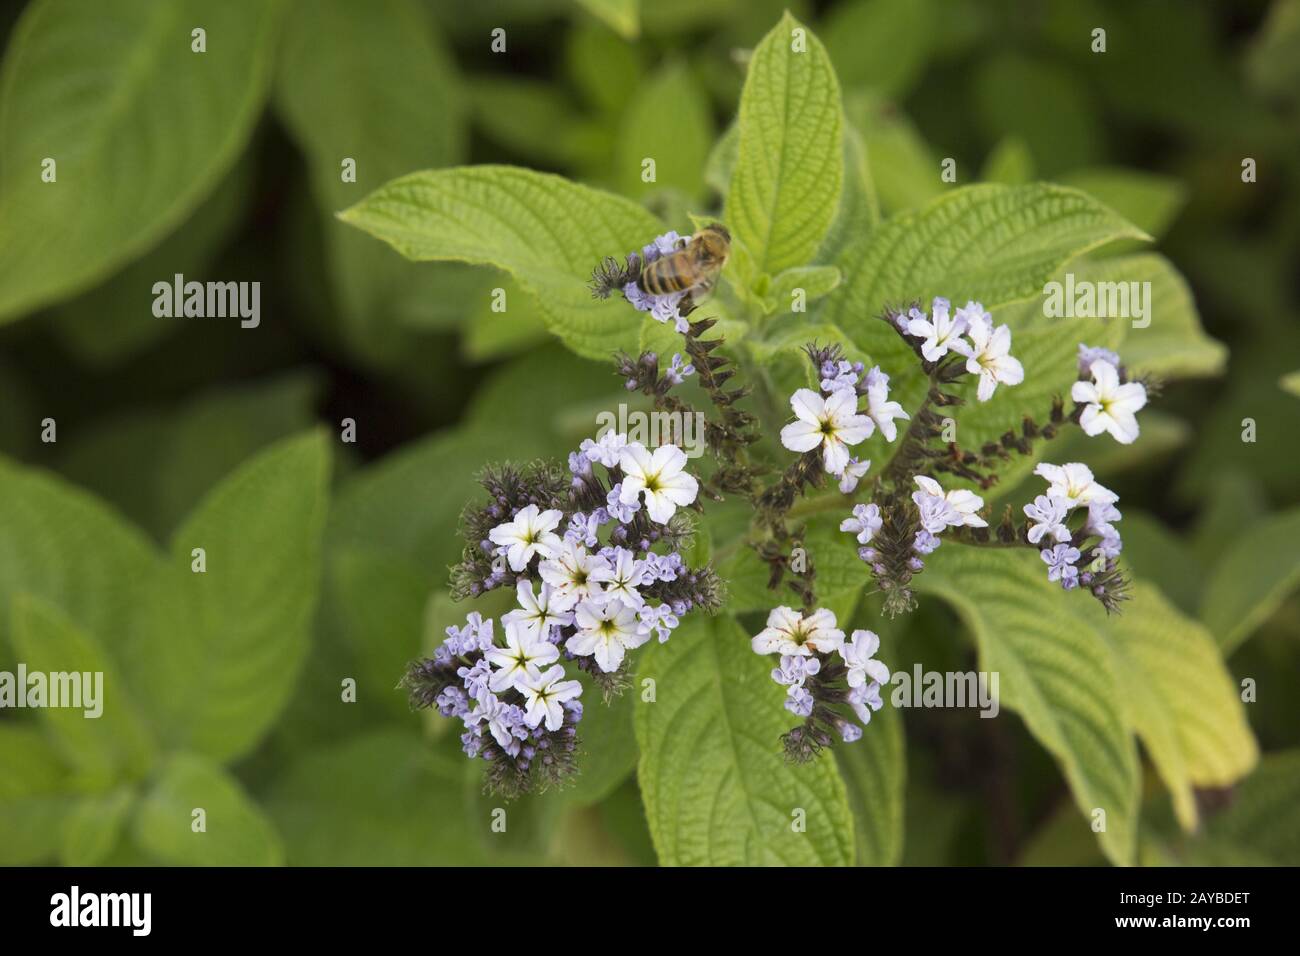 garden heliotrope, common heliotrope or cherry pie (Heliotropium arborescens) Stock Photo